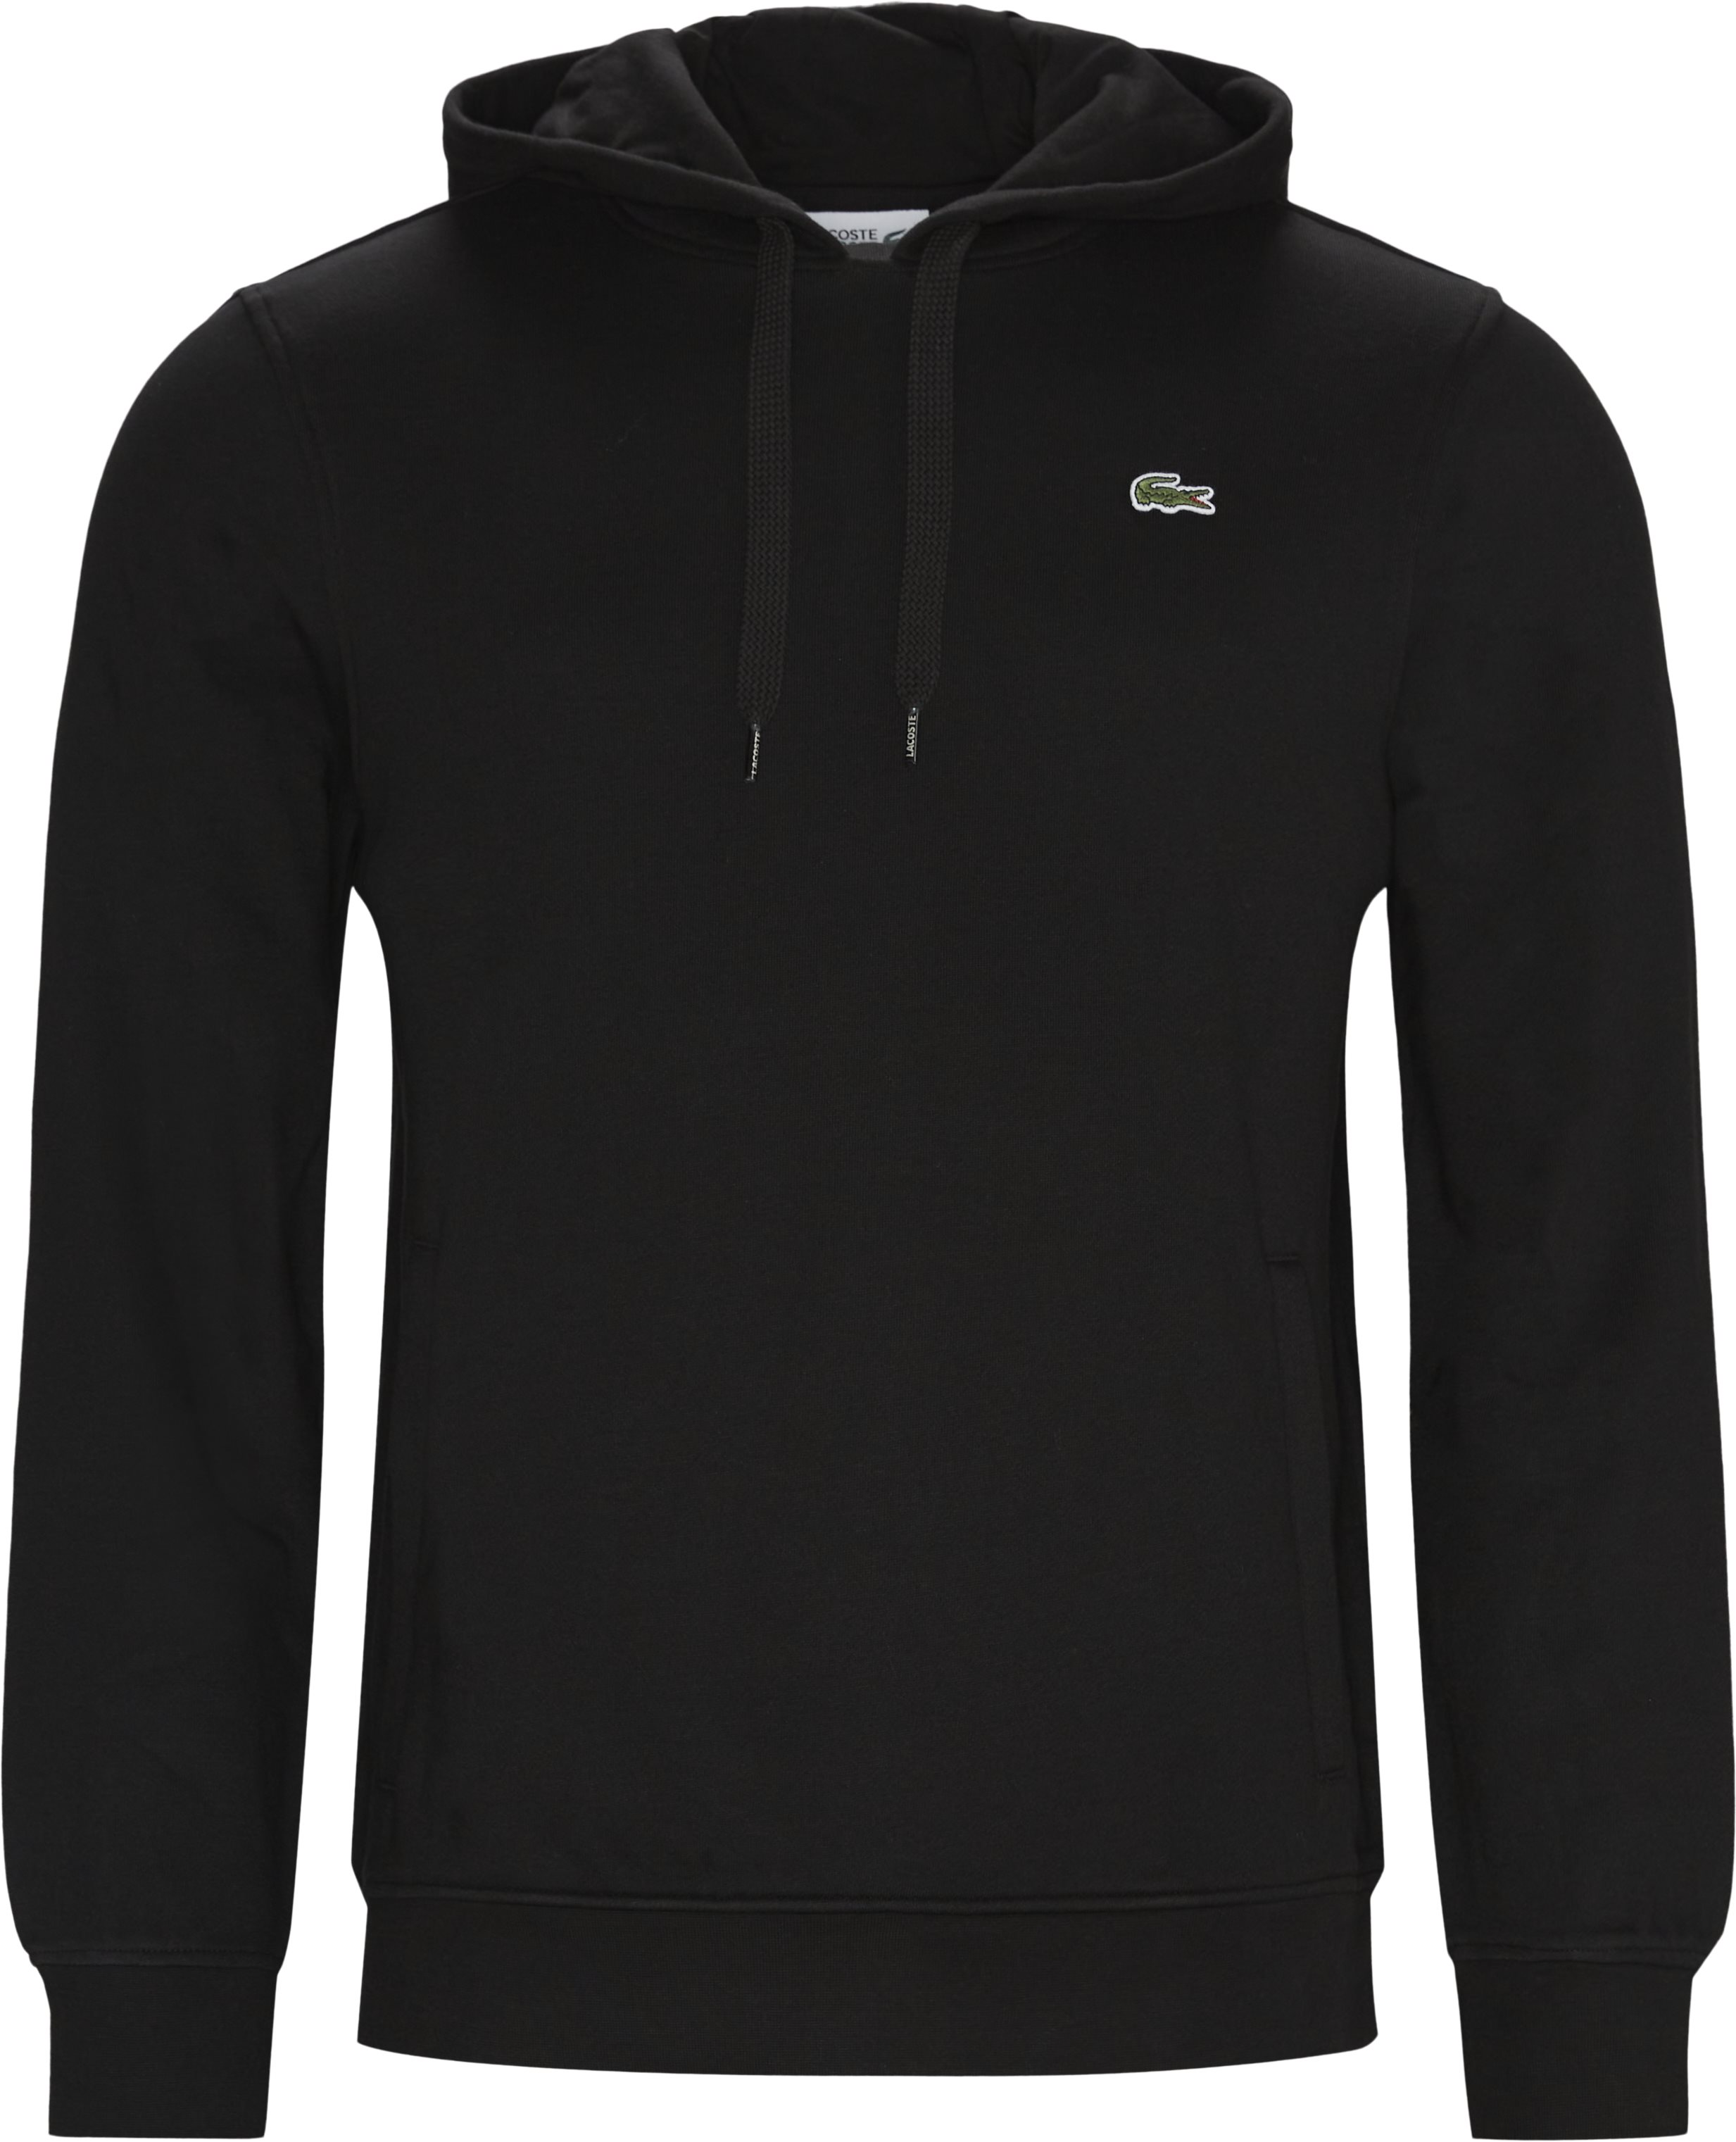 SH1527 Hoodie - Sweatshirts - Regular fit - Black